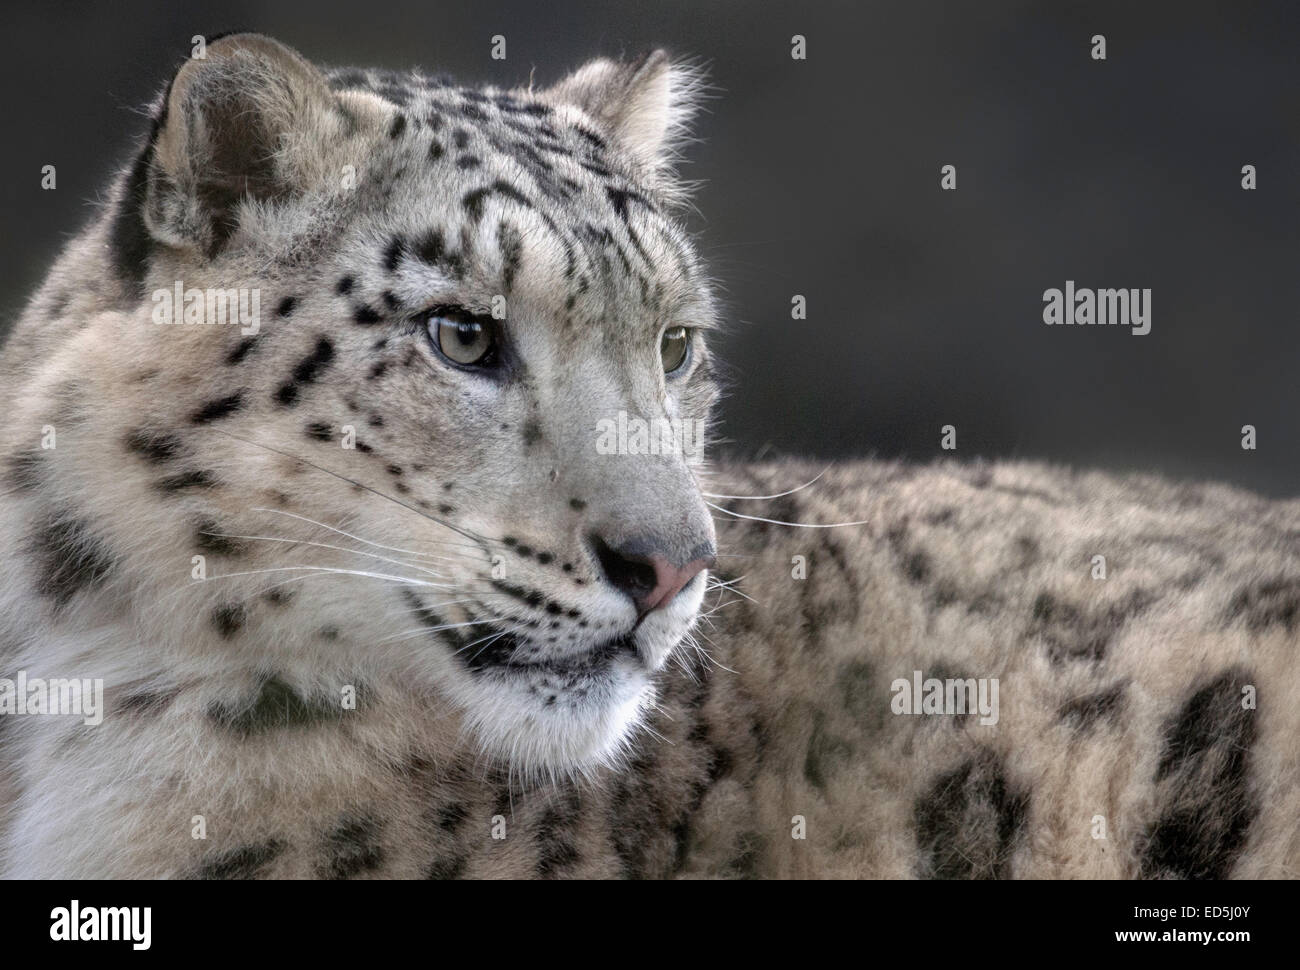 Homme snow leopard Banque D'Images